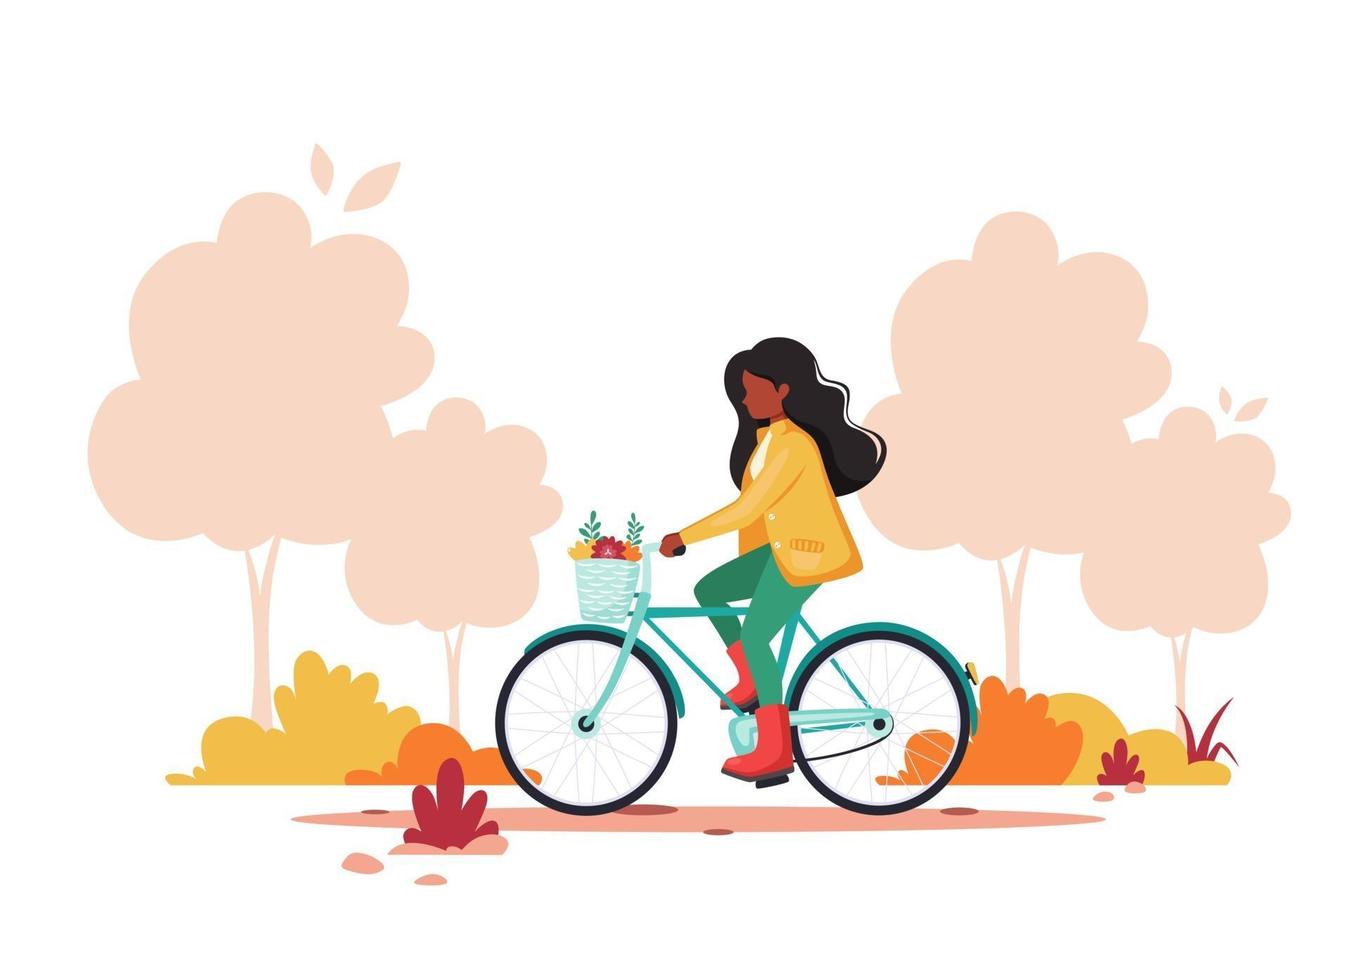 zwarte vrouw rijden fiets in herfst park. gezonde levensstijl, sport, concept voor buitenactiviteiten. vector illustratie.